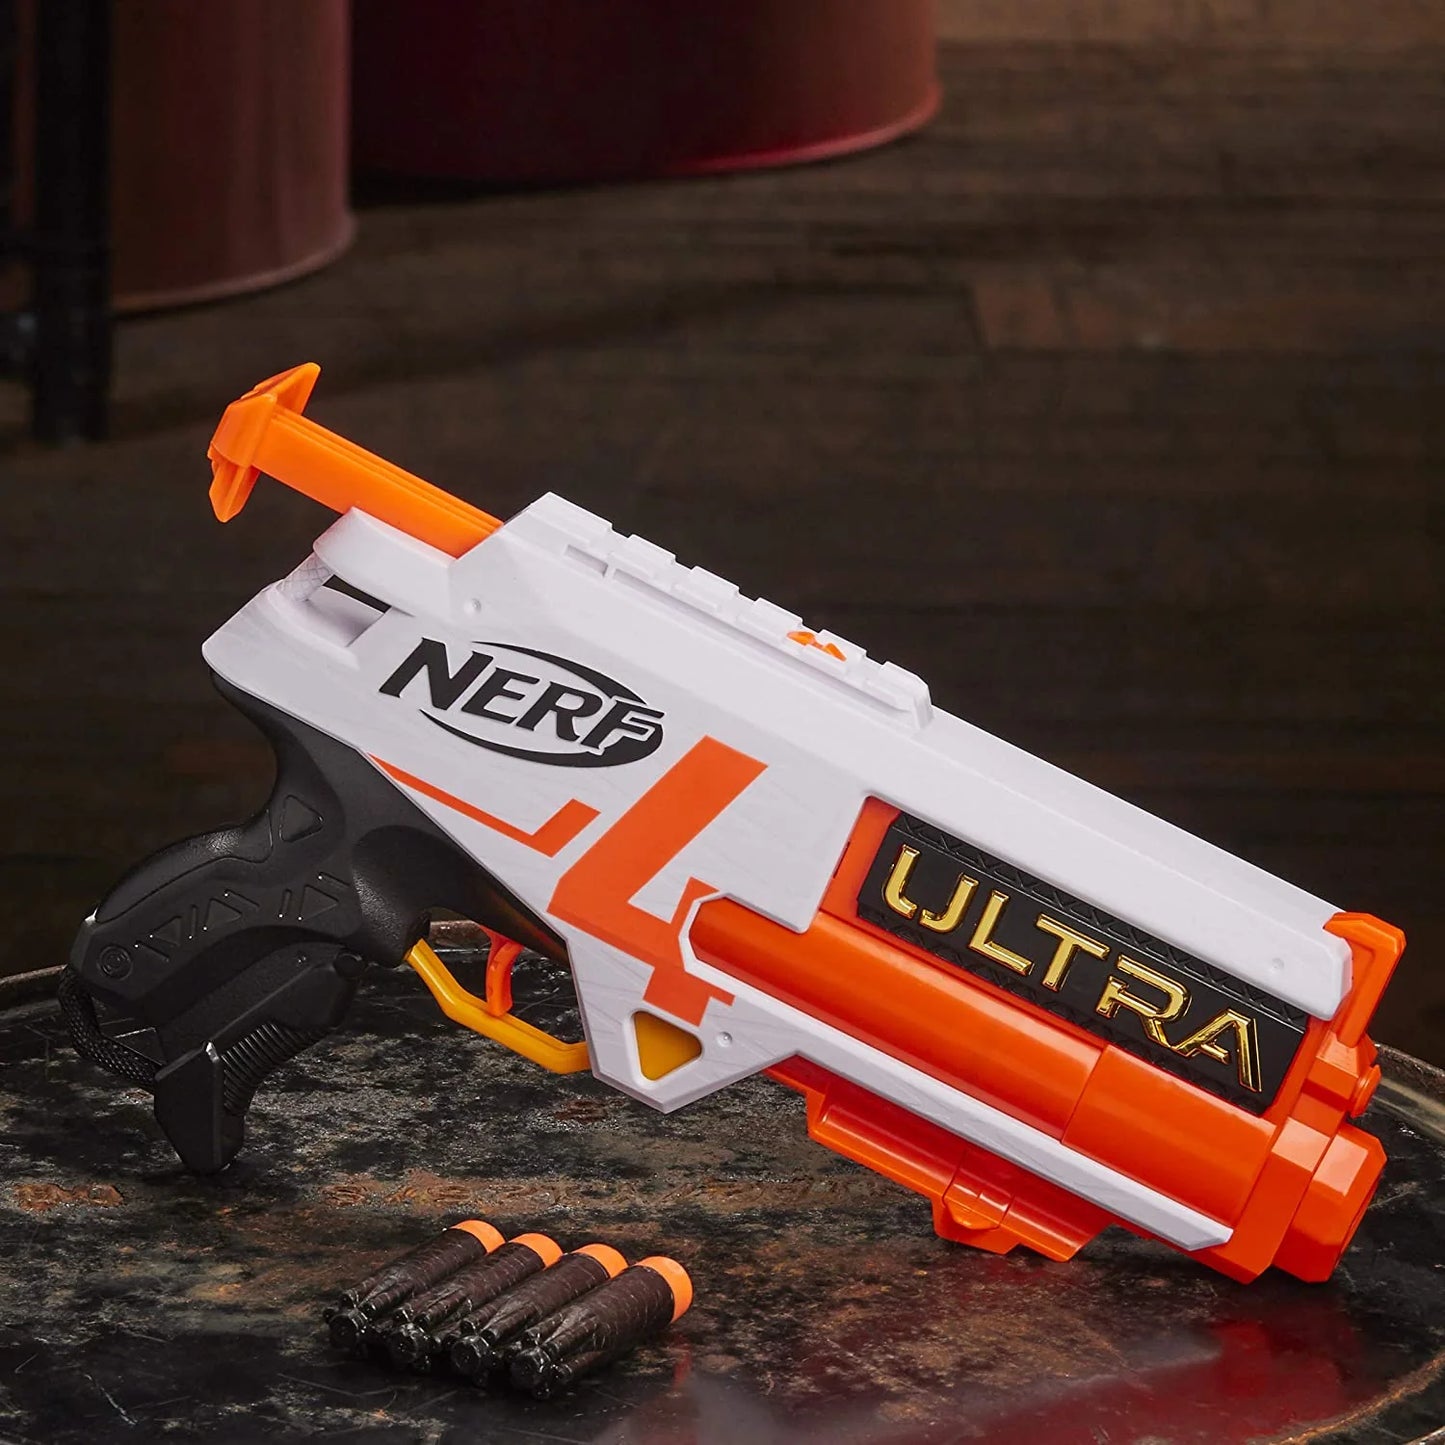 NERF Ultra Four Dart Blaster